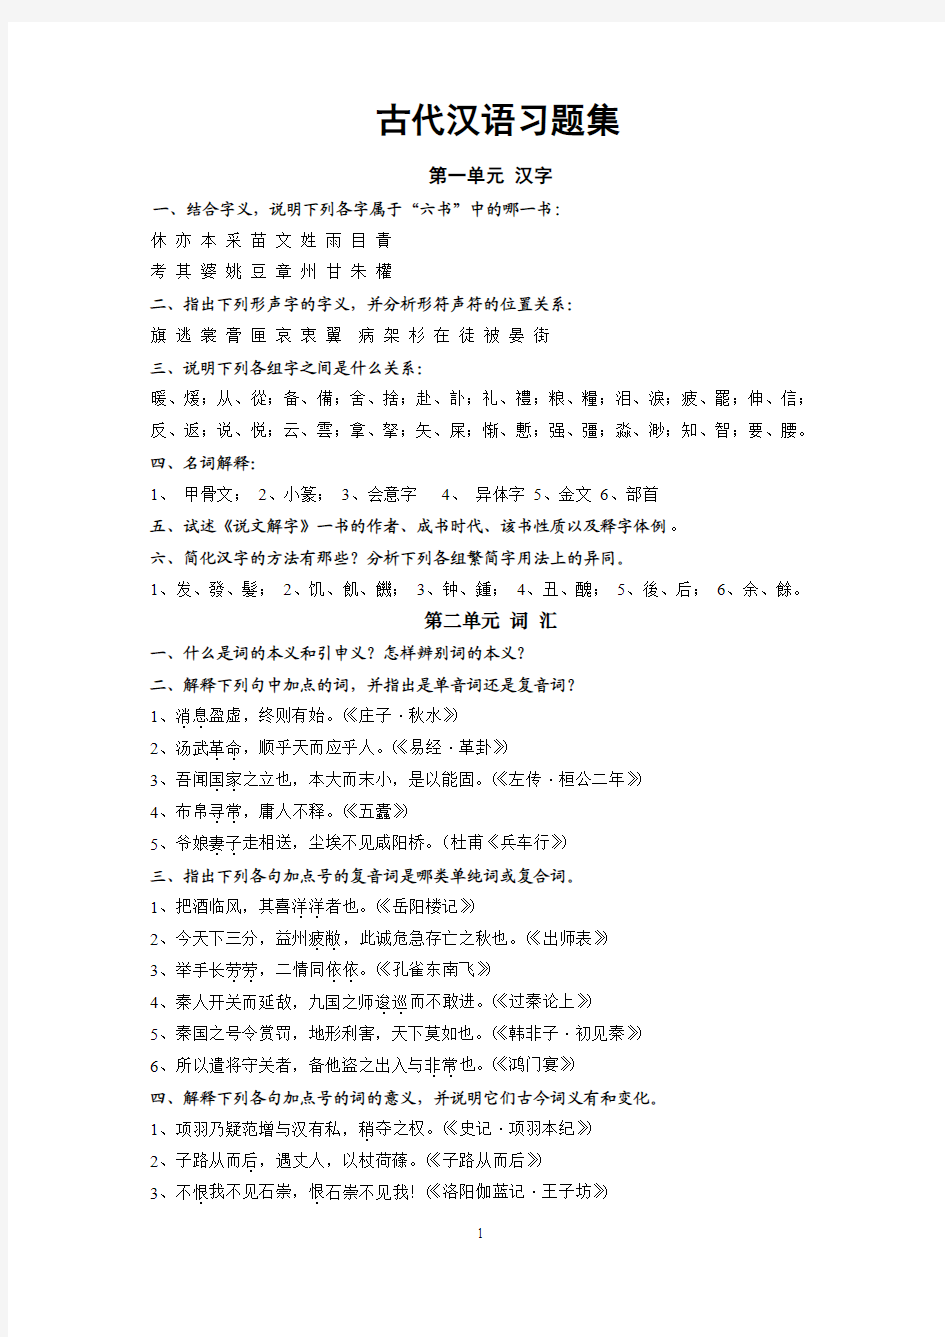 王力古代汉语习题集文字版(xd)